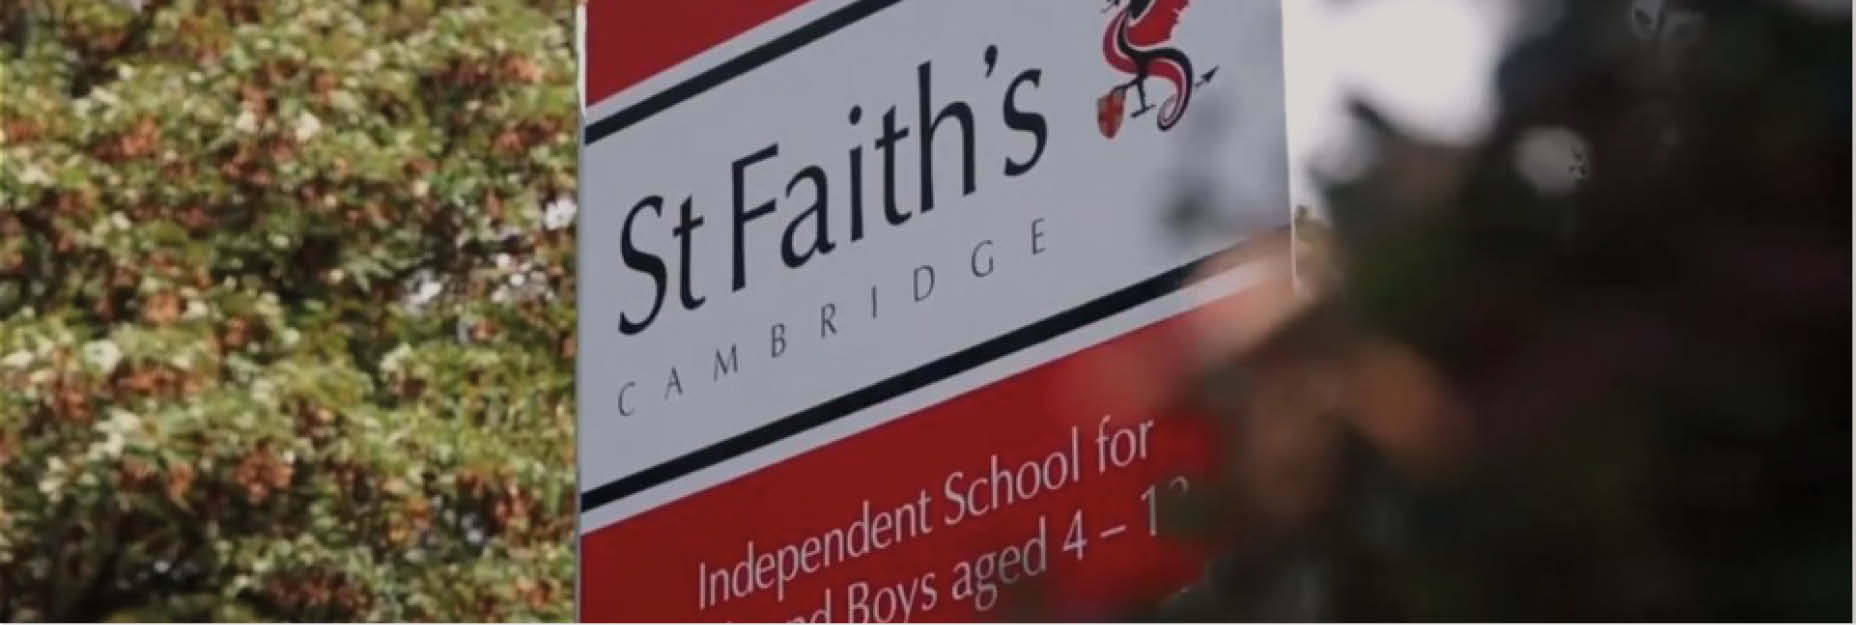 ST Faith's School case study 